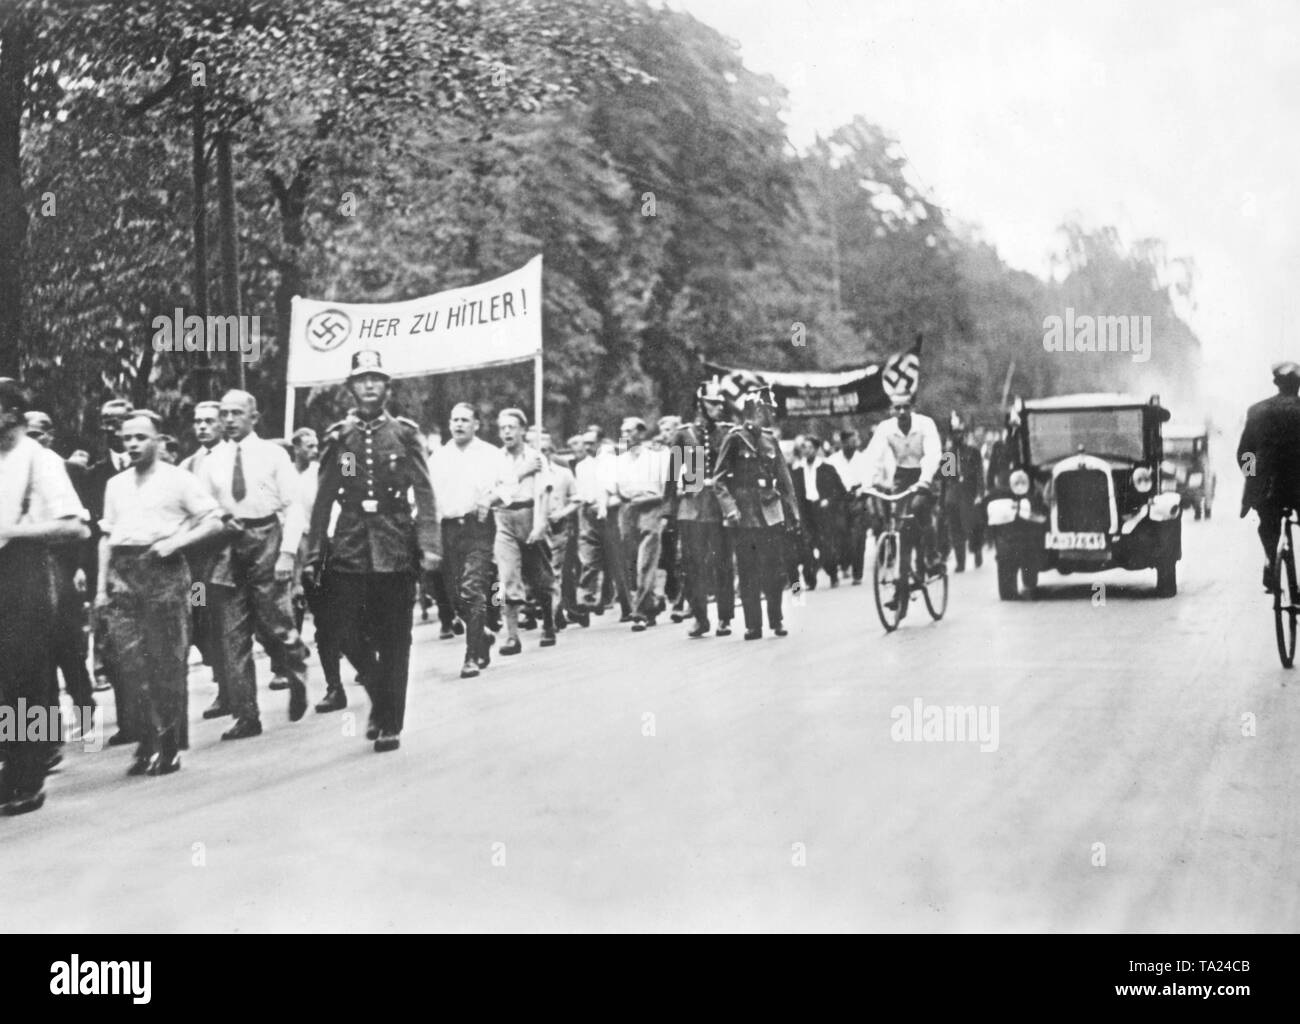 Während die einheitliche und marschieren verbieten, die Verbände der SA und SS März in weißen Hemden mit Bannern, begleitet von der Schupo (Schutzpolizei - Schutz der Polizei). Auf einem Banner ist die Inschrift "Ihre zu Hitler'. Stockfoto